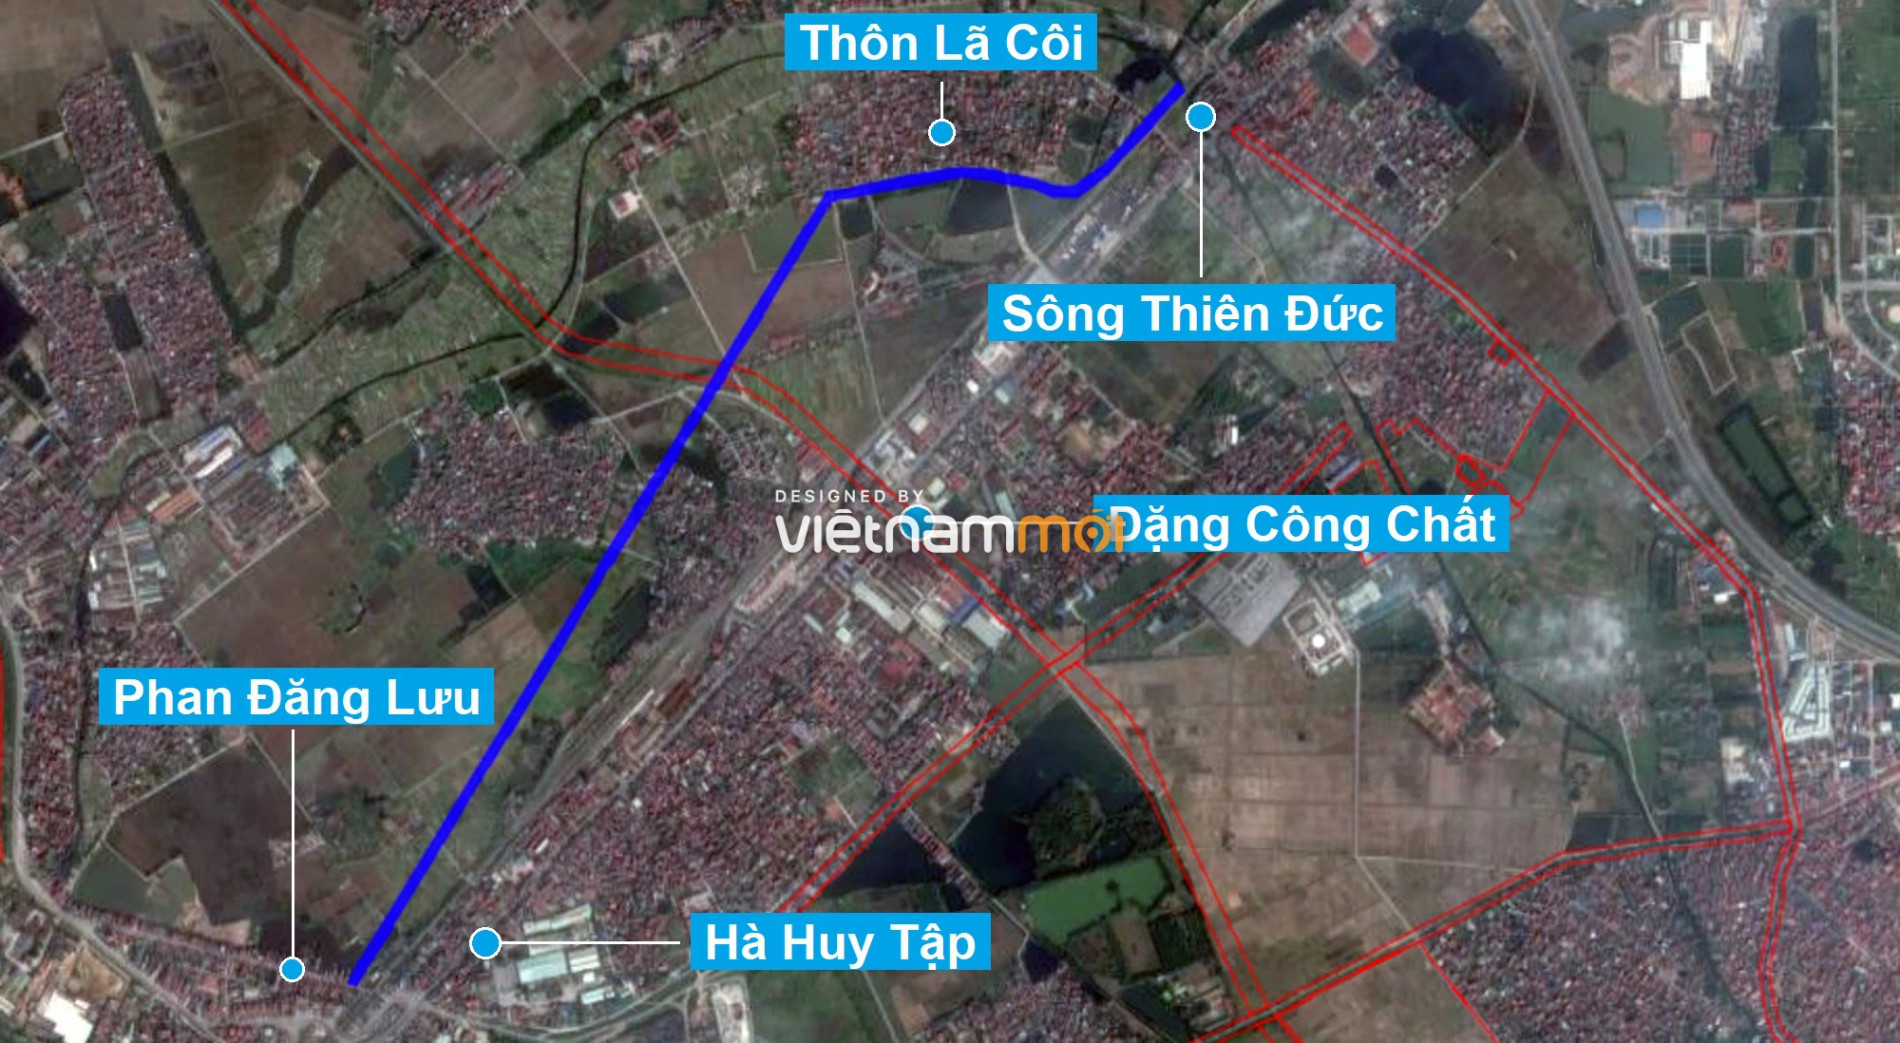 Những khu đất sắp thu hồi để mở đường ở huyện Gia Lâm, Hà Nội (phần 2) - Ảnh 2.